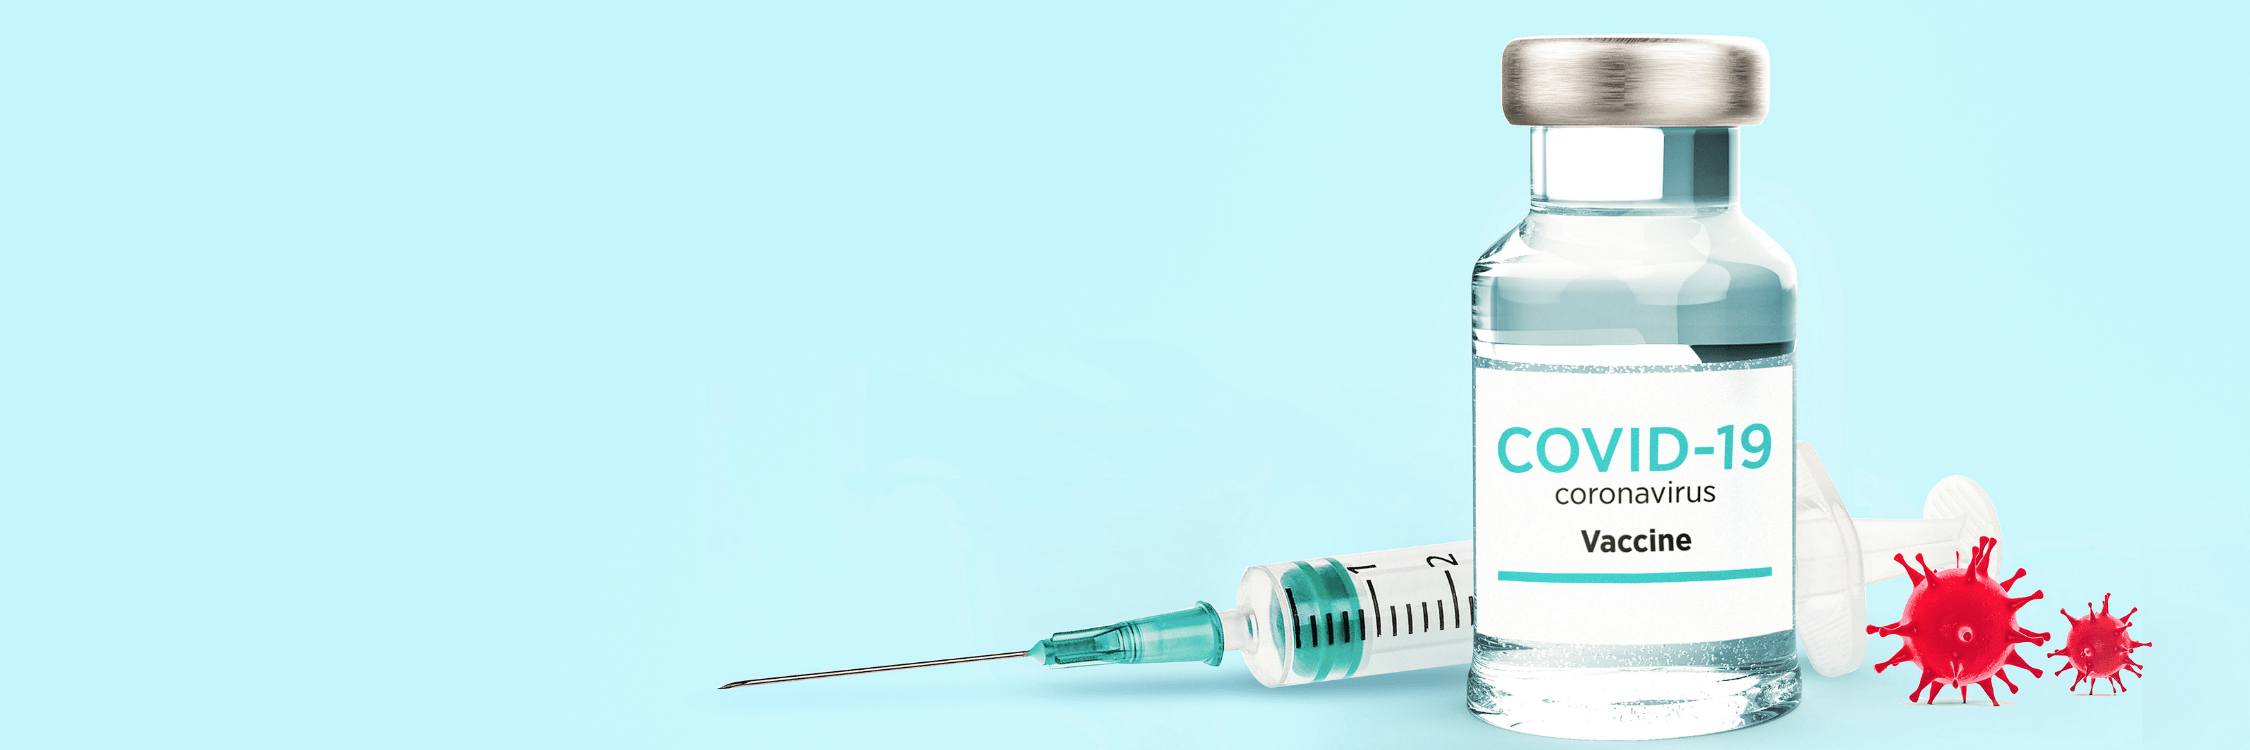 Covid 19 vaccine Administering COVID